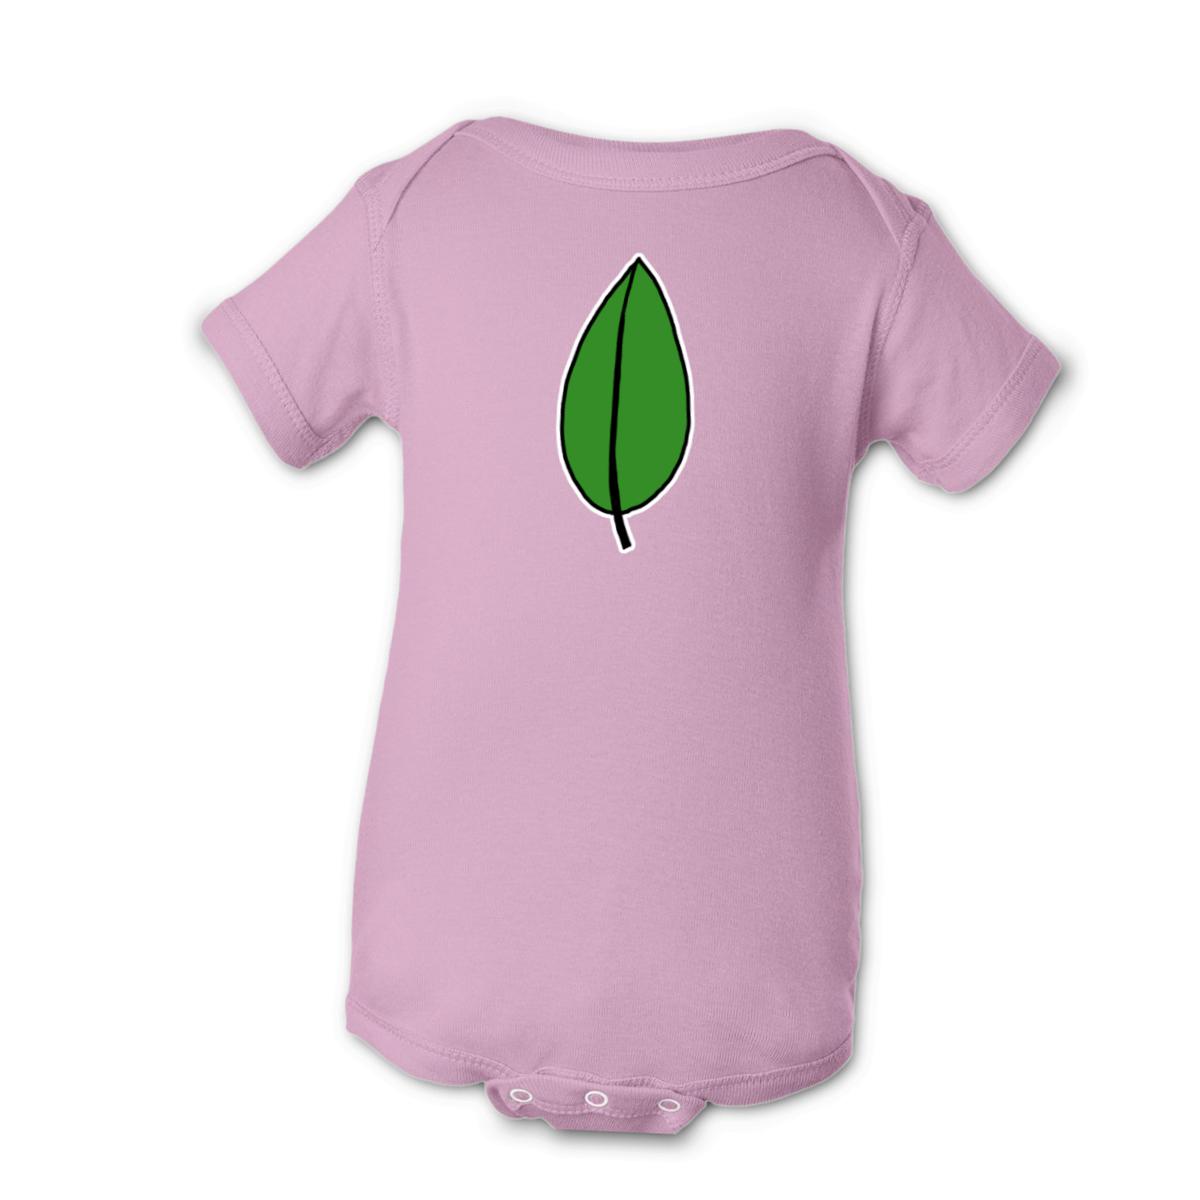 Olive Leaf Onesie 12M pink